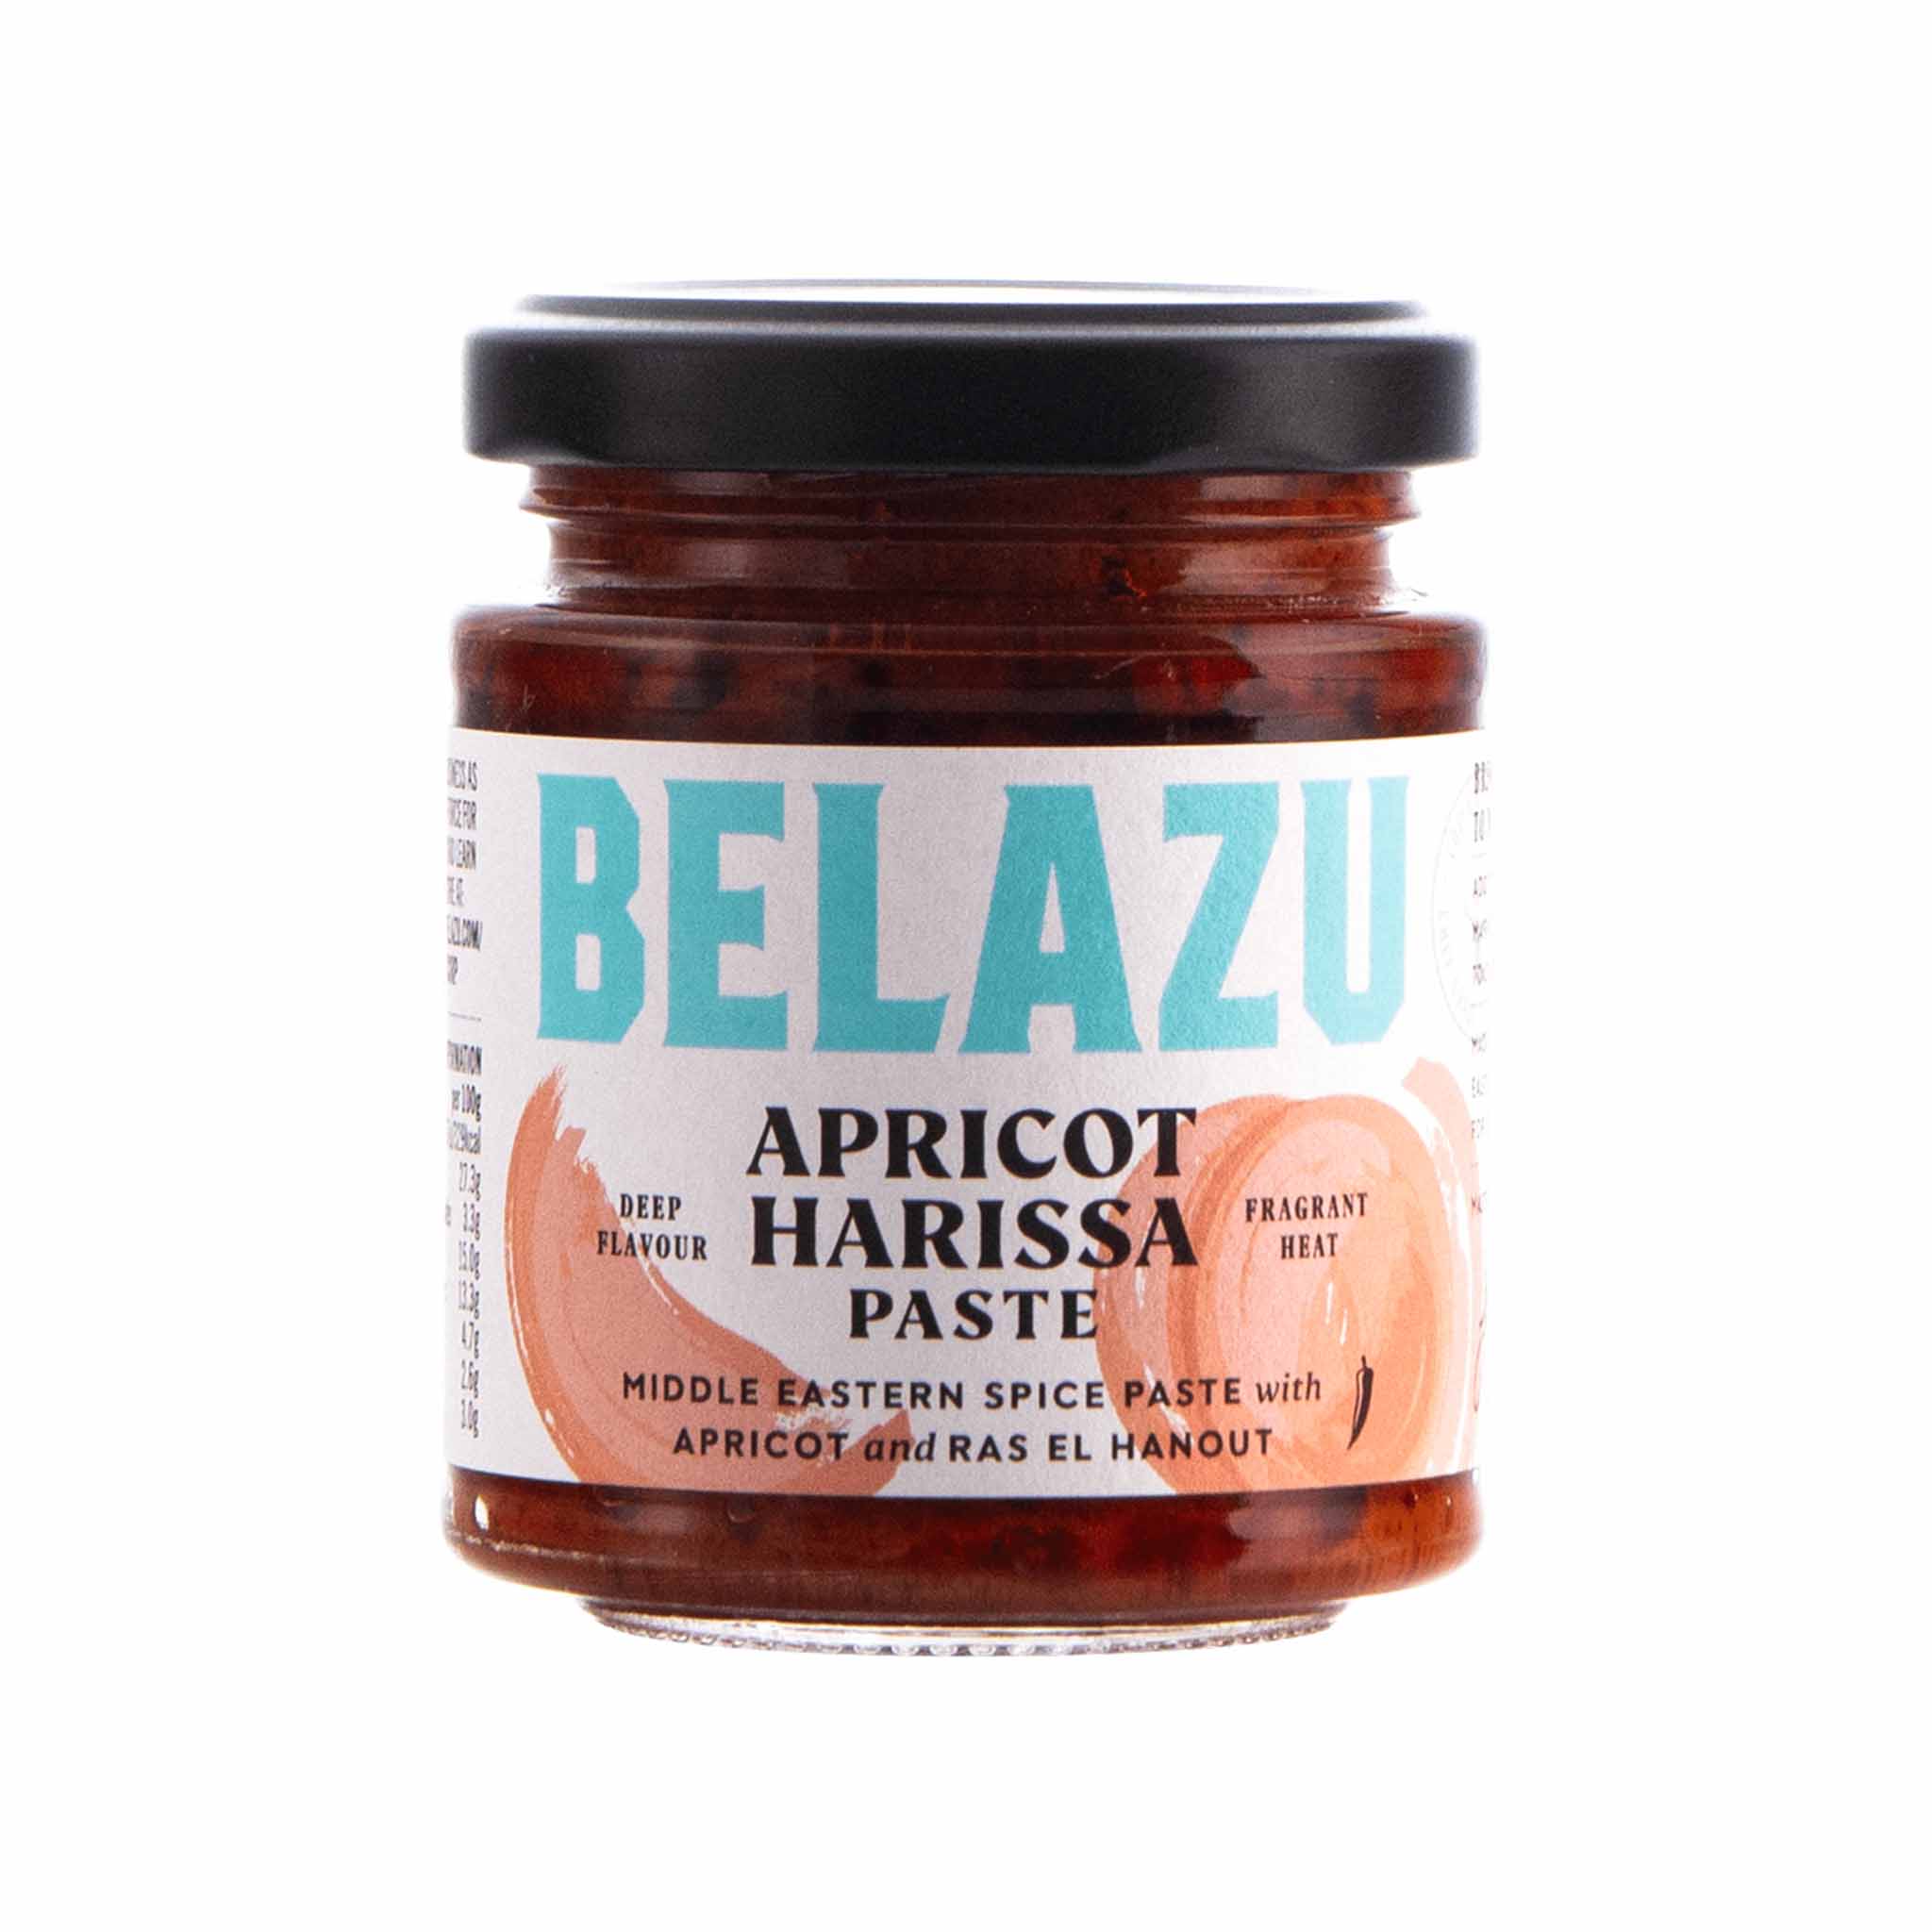 Belazu Apricot Harissa Paste in a Glass Jar